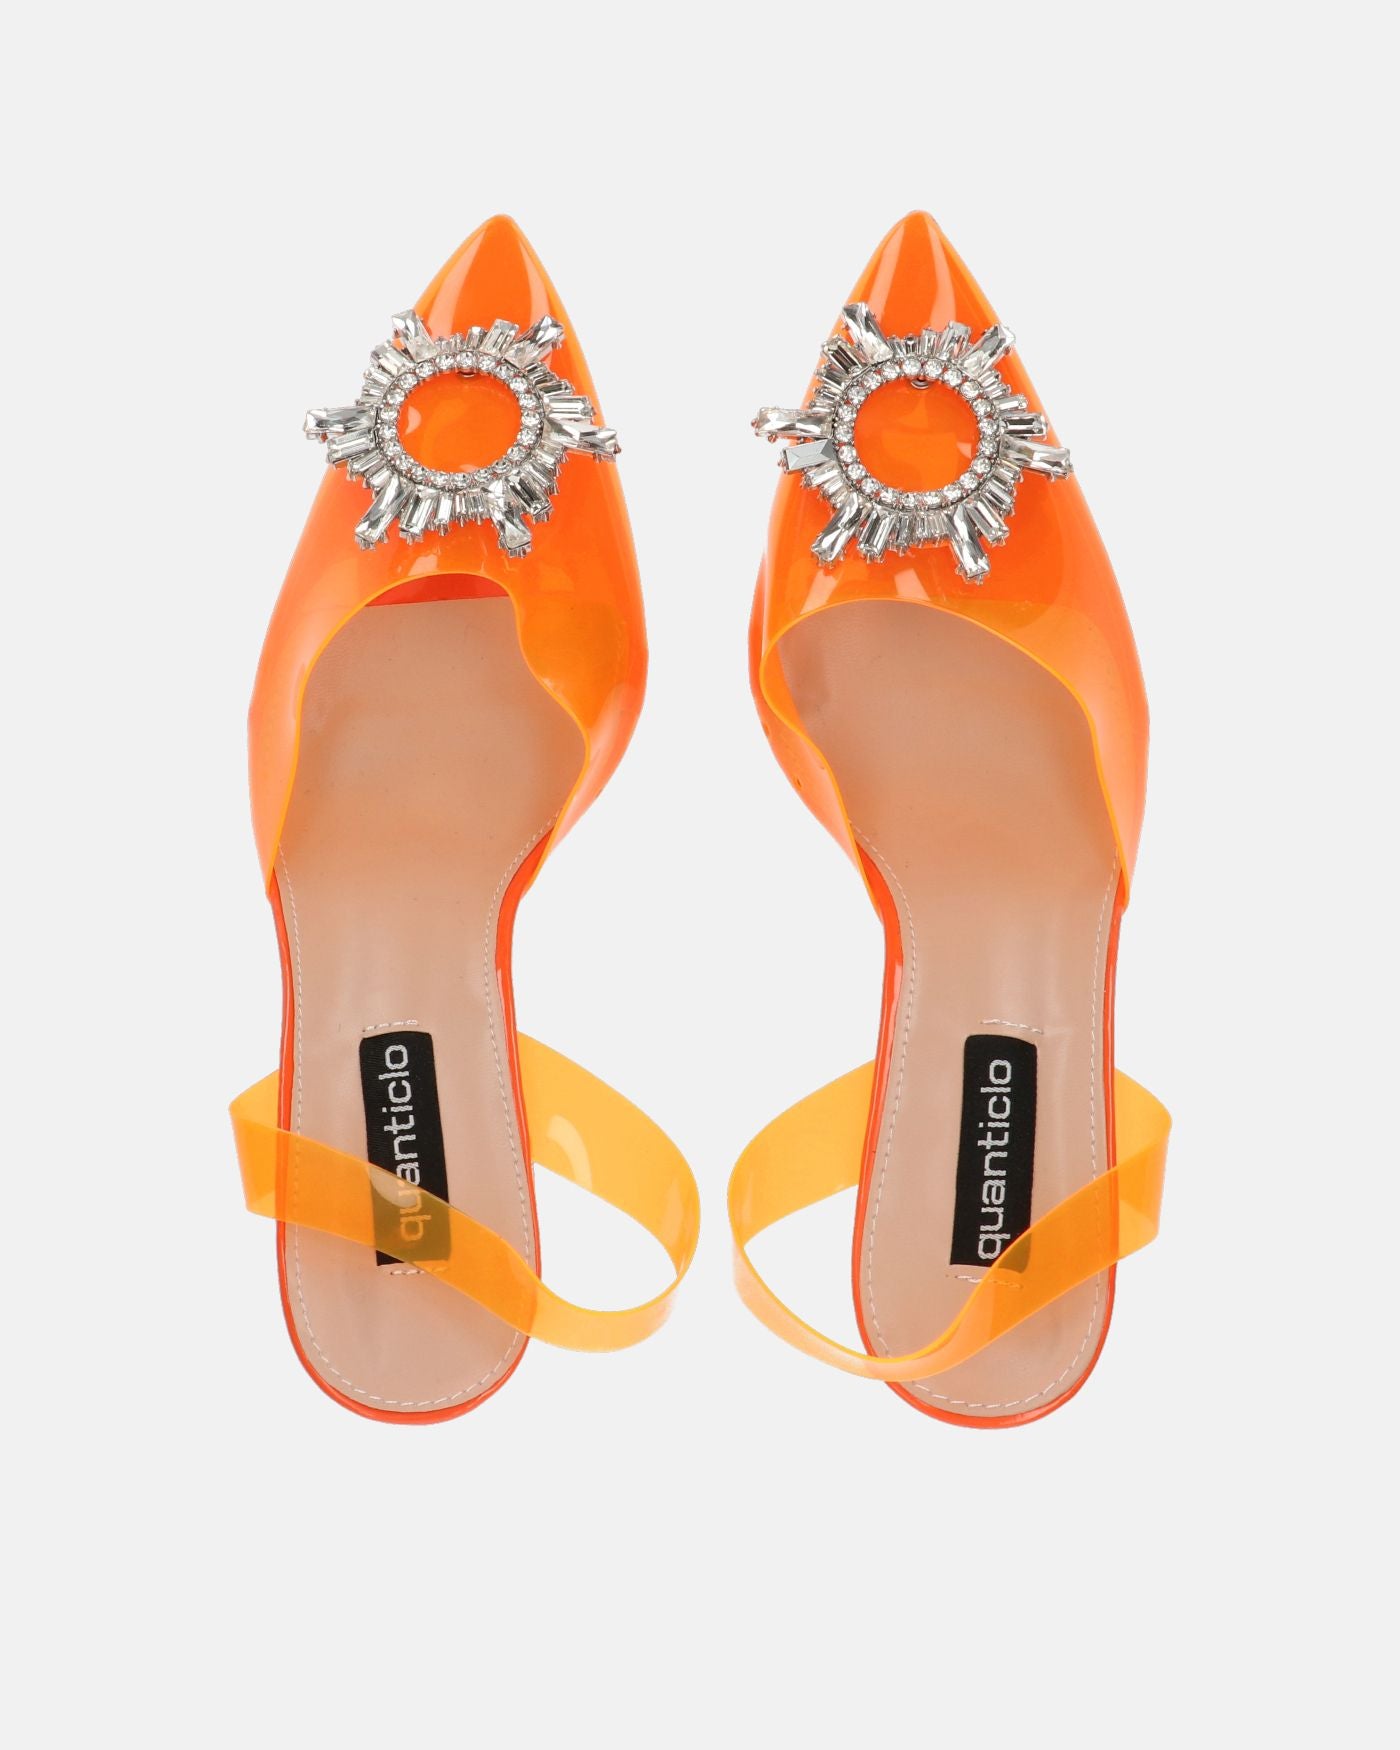 KENAN - zapatos de perspex naranja con adorno en la puntera